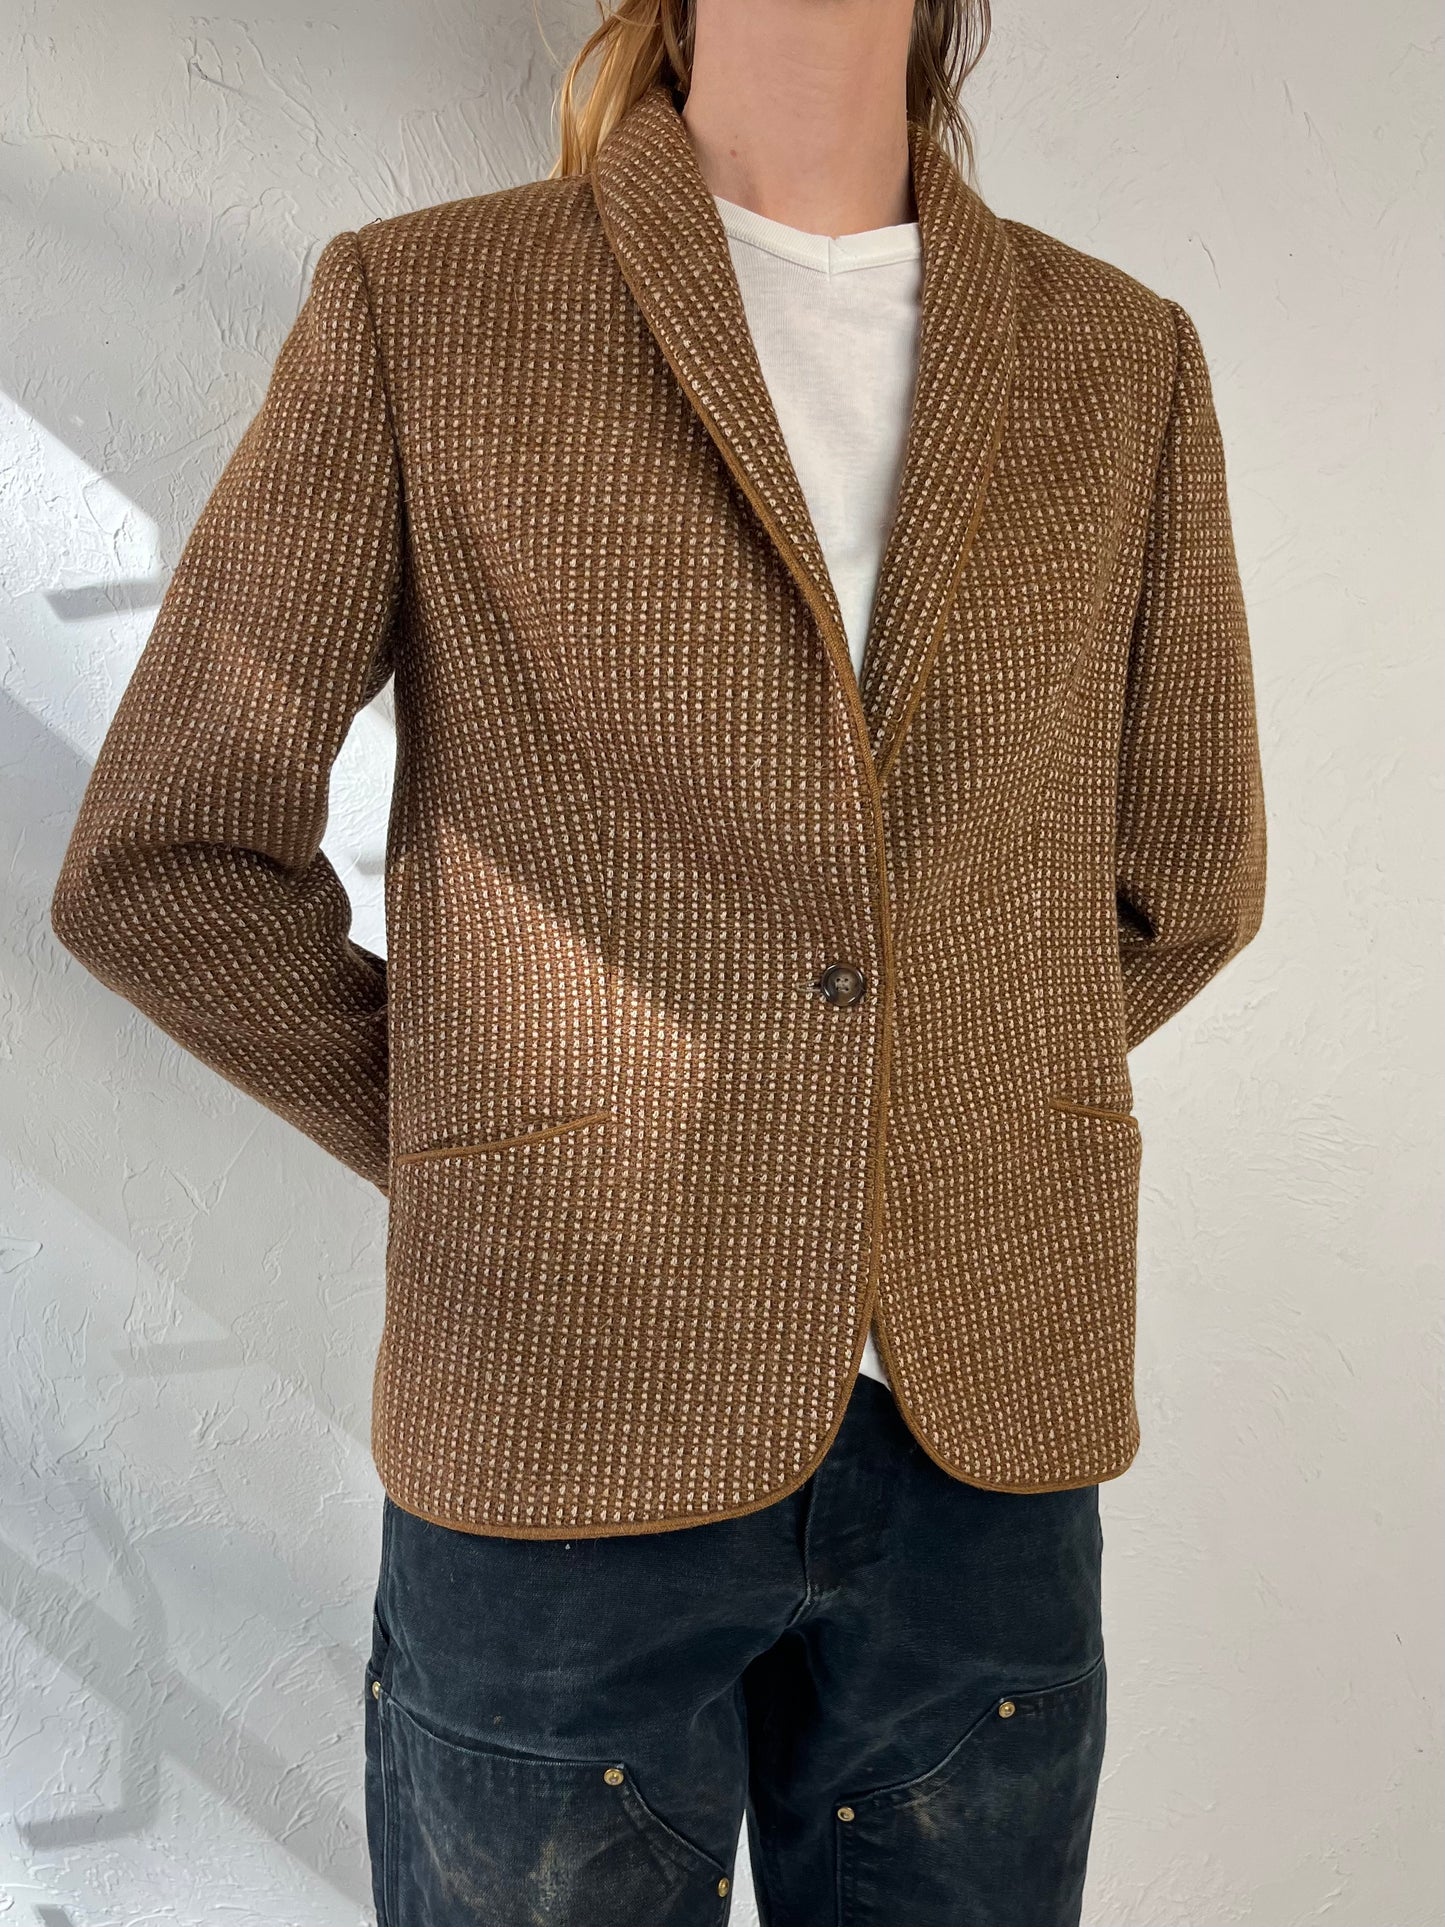 80s 'Michel Robichaud' Brown Blazer Jacket / Medium